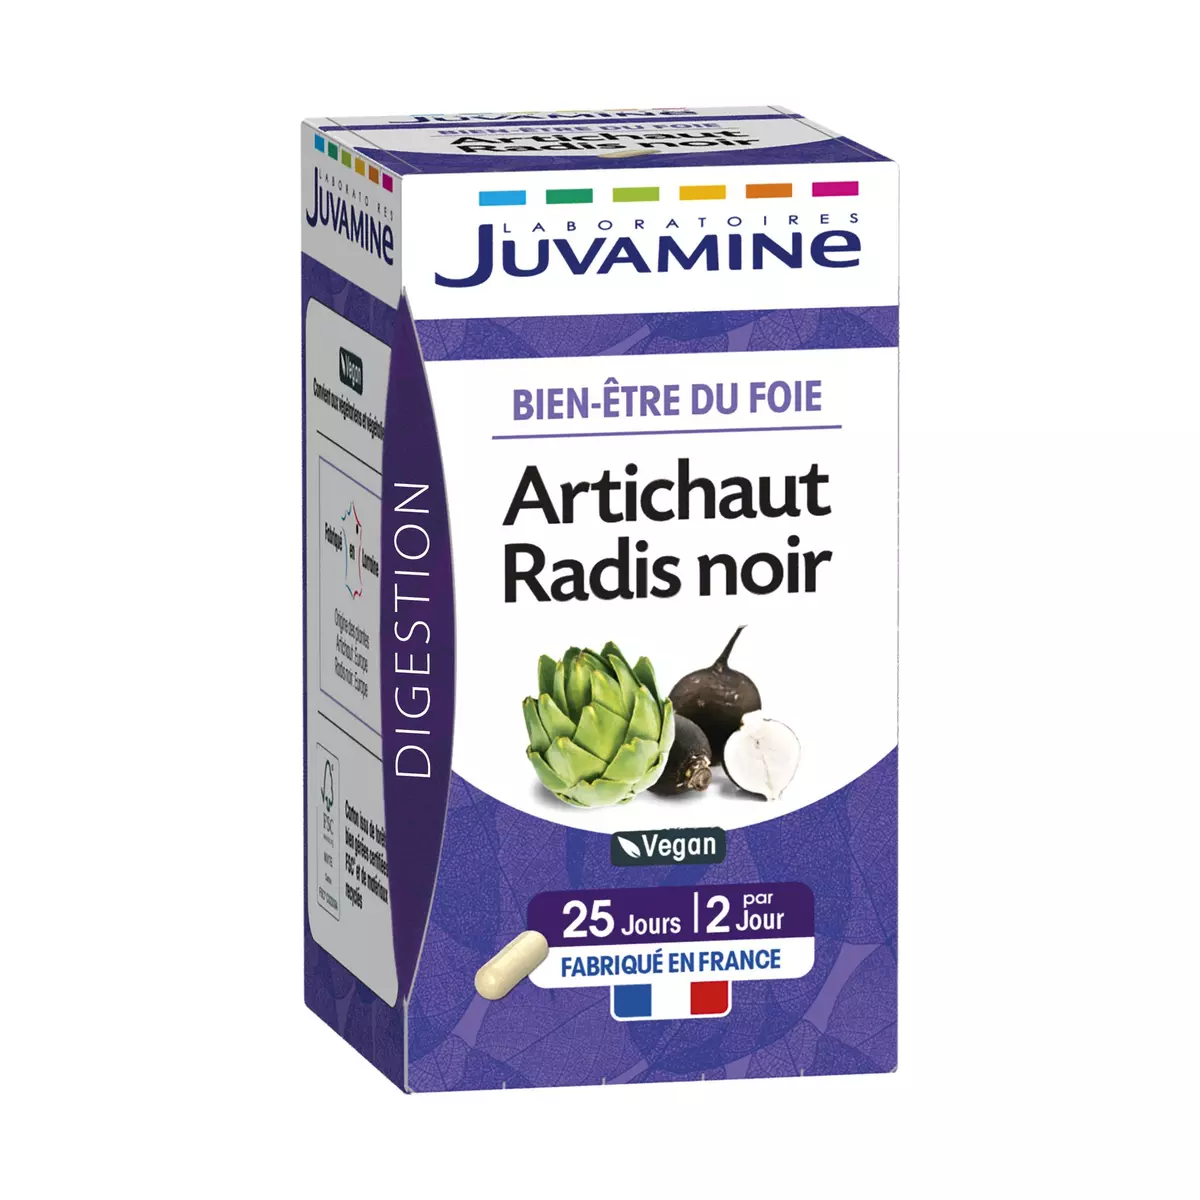 JUVAMINE Bien-être du foie artichaut radis noir vegan 50 gélules 18g